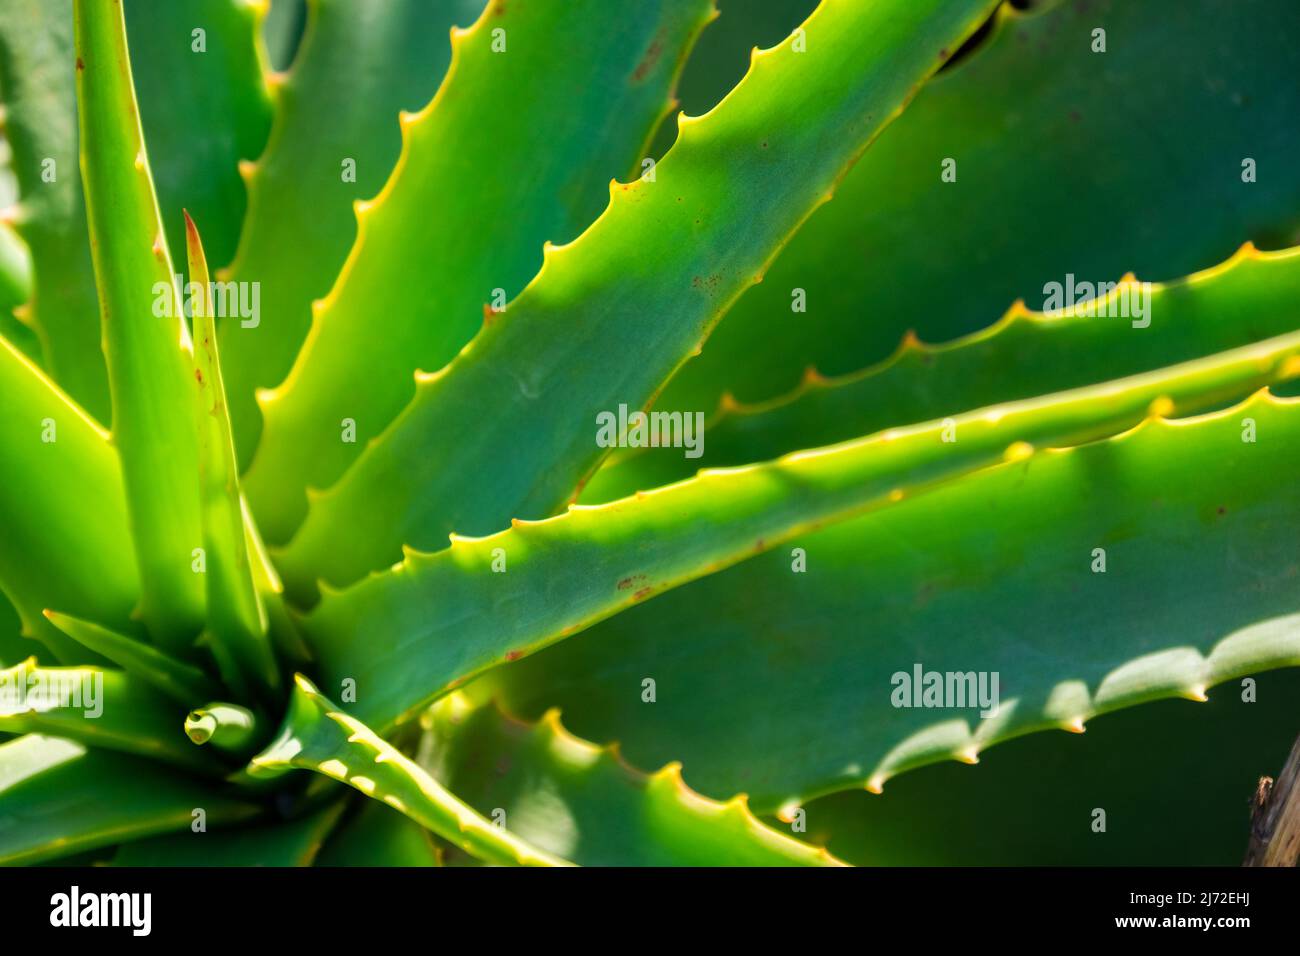 Detalles de las espinas y las hojas de un cactus Stock Photo